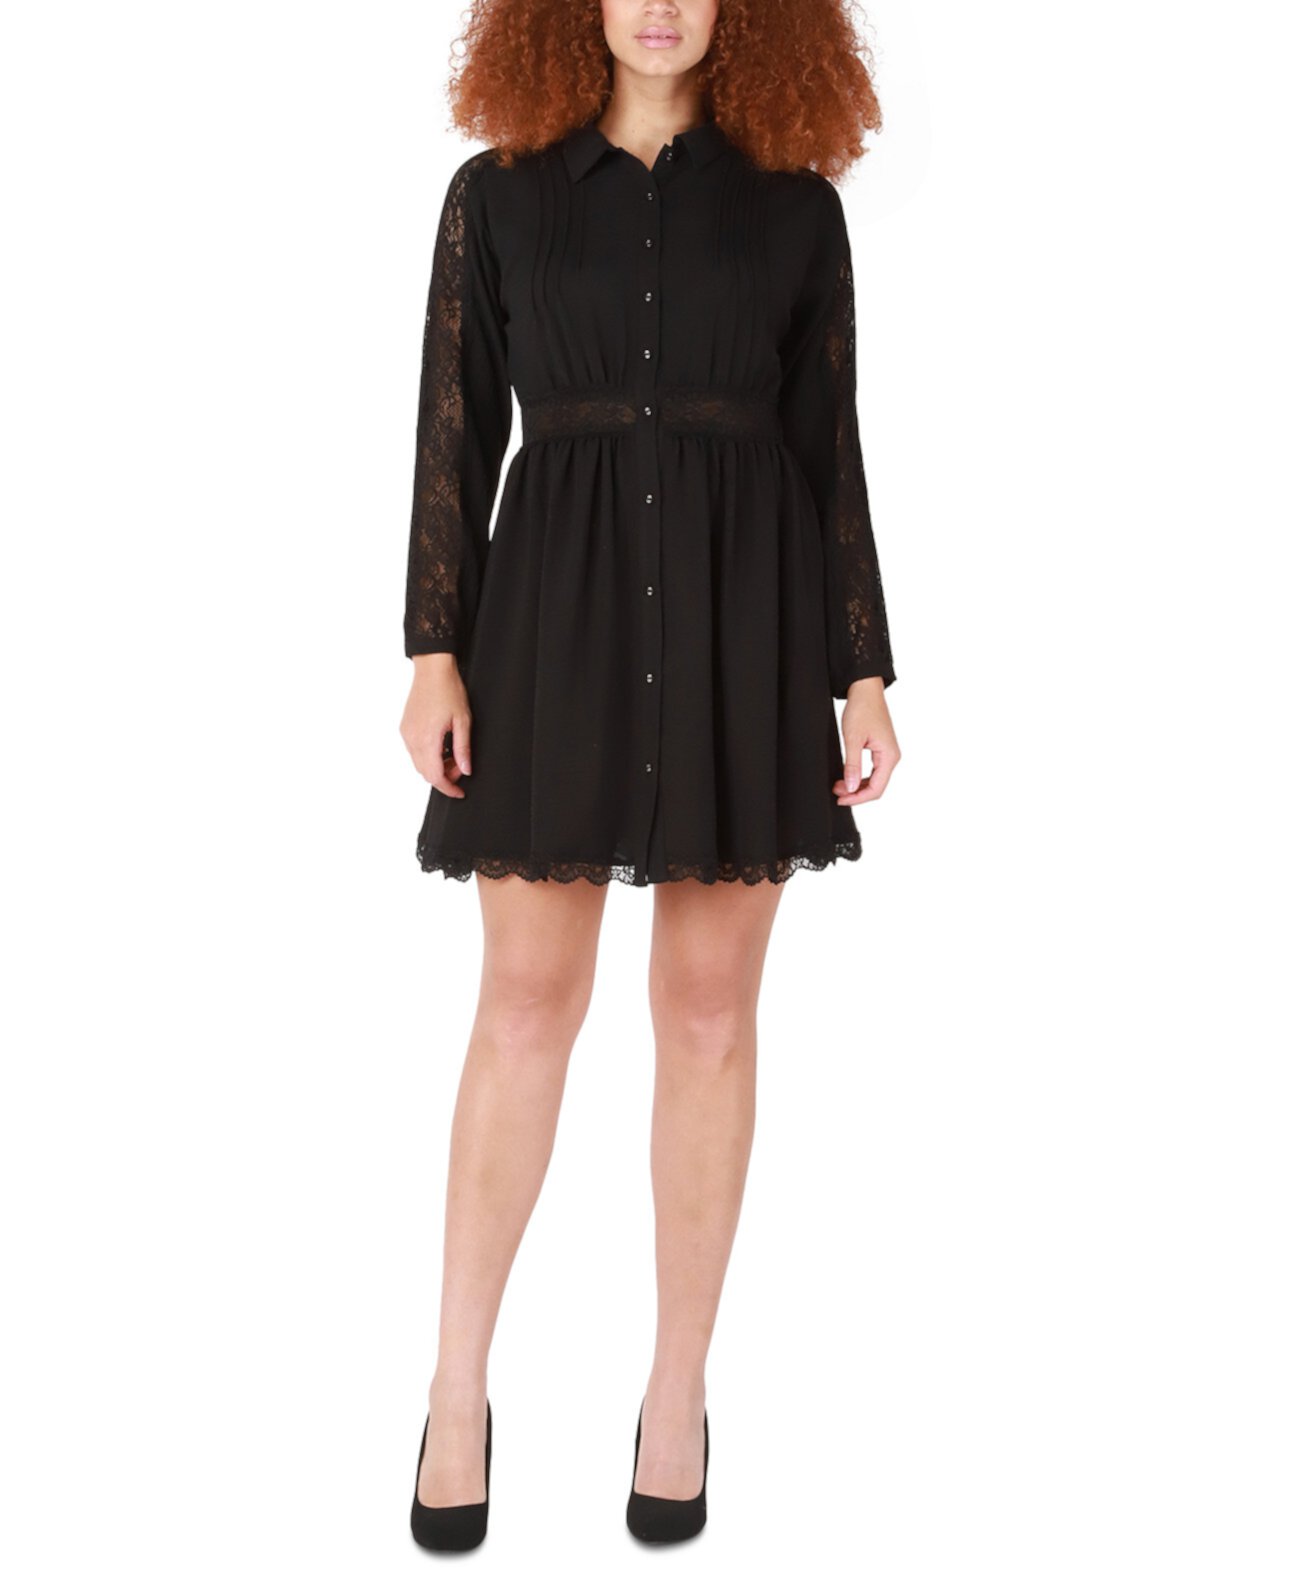 Женское жаккардовое платье-рубашка с кружевной отделкой Black Tape